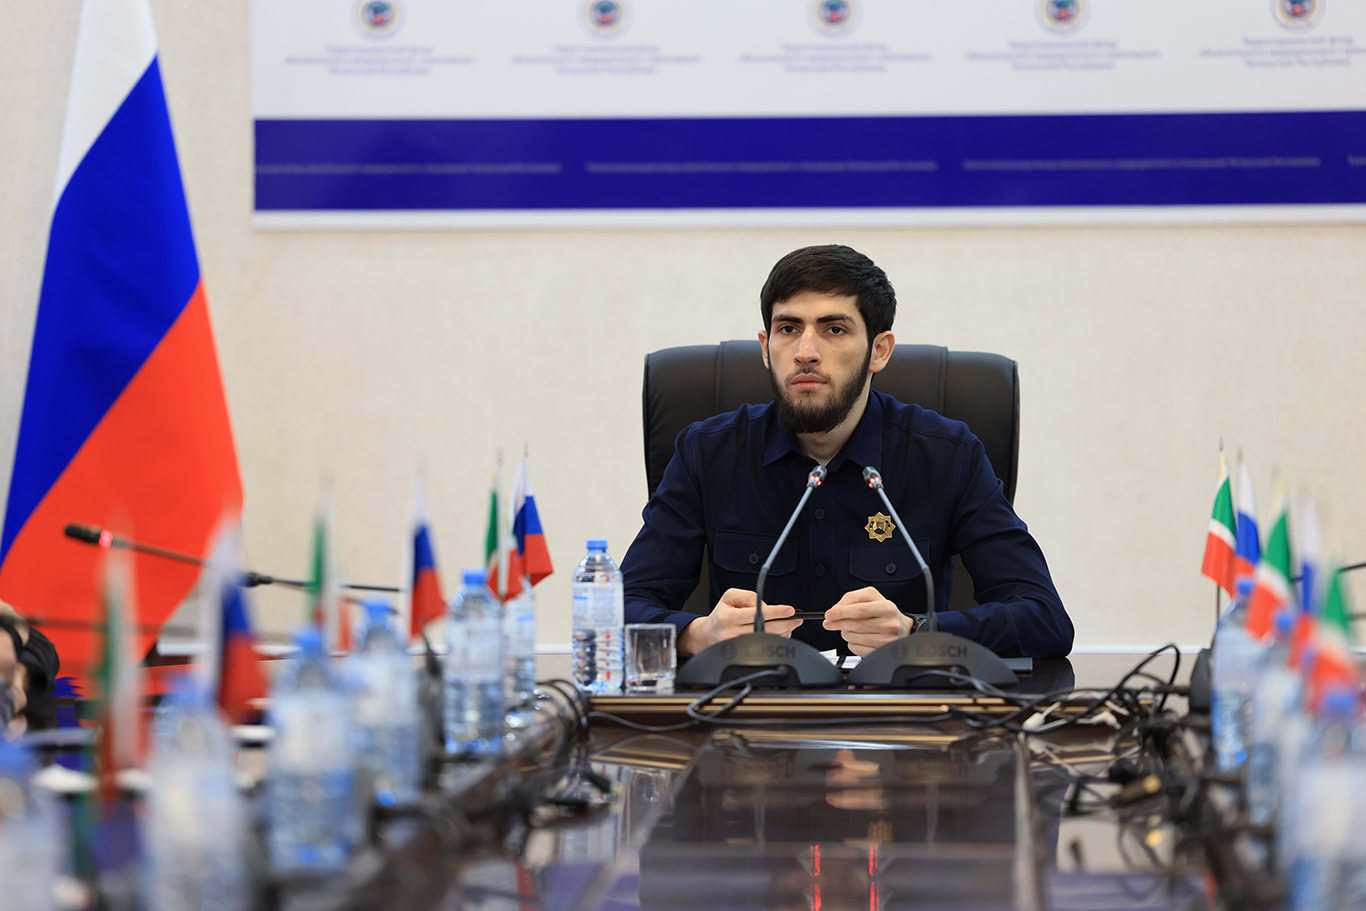 В ТФОМС Чеченской Республики прошло расширенное совещание 